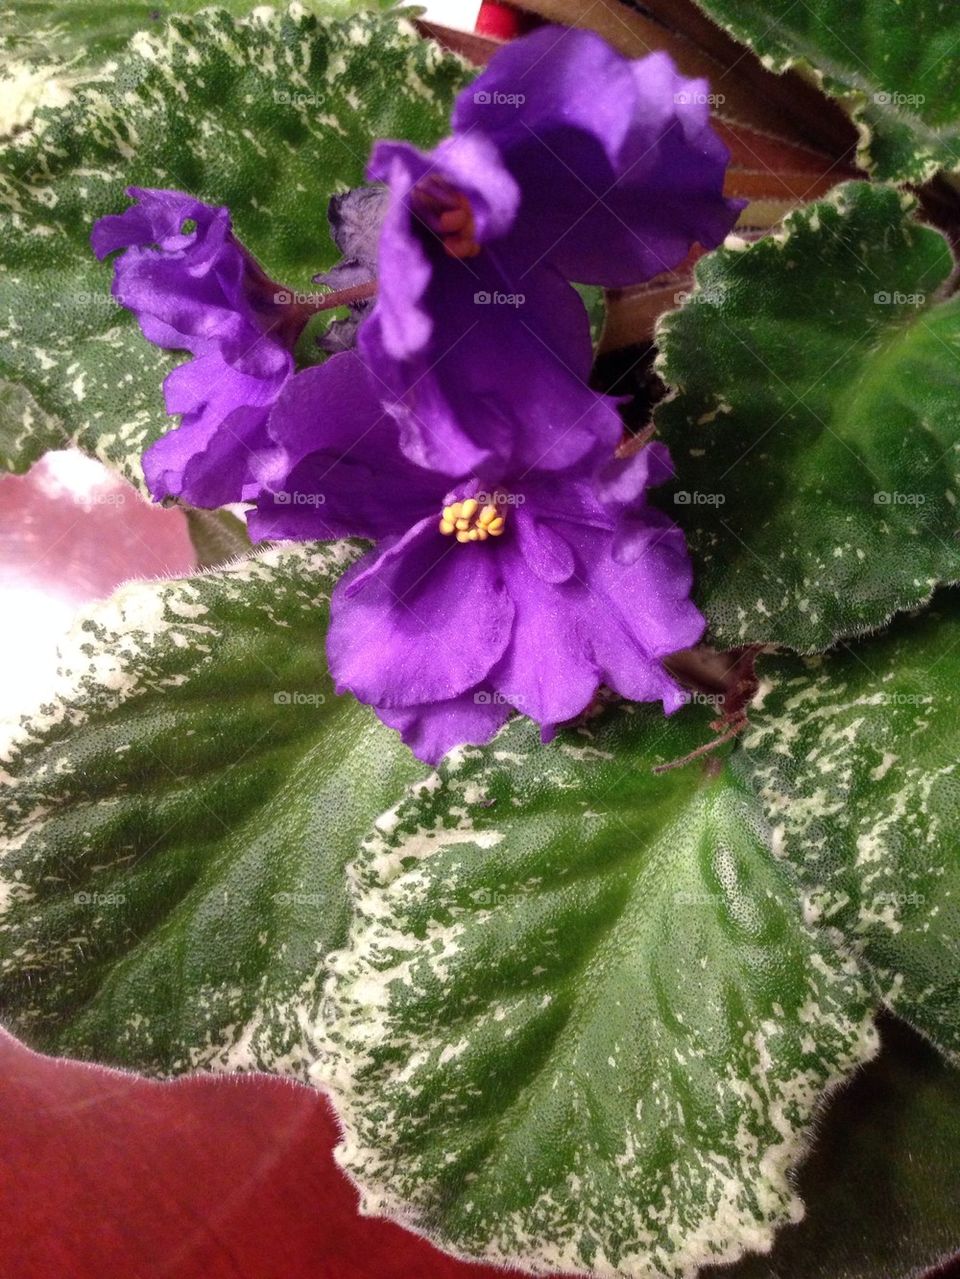 Violet house plants